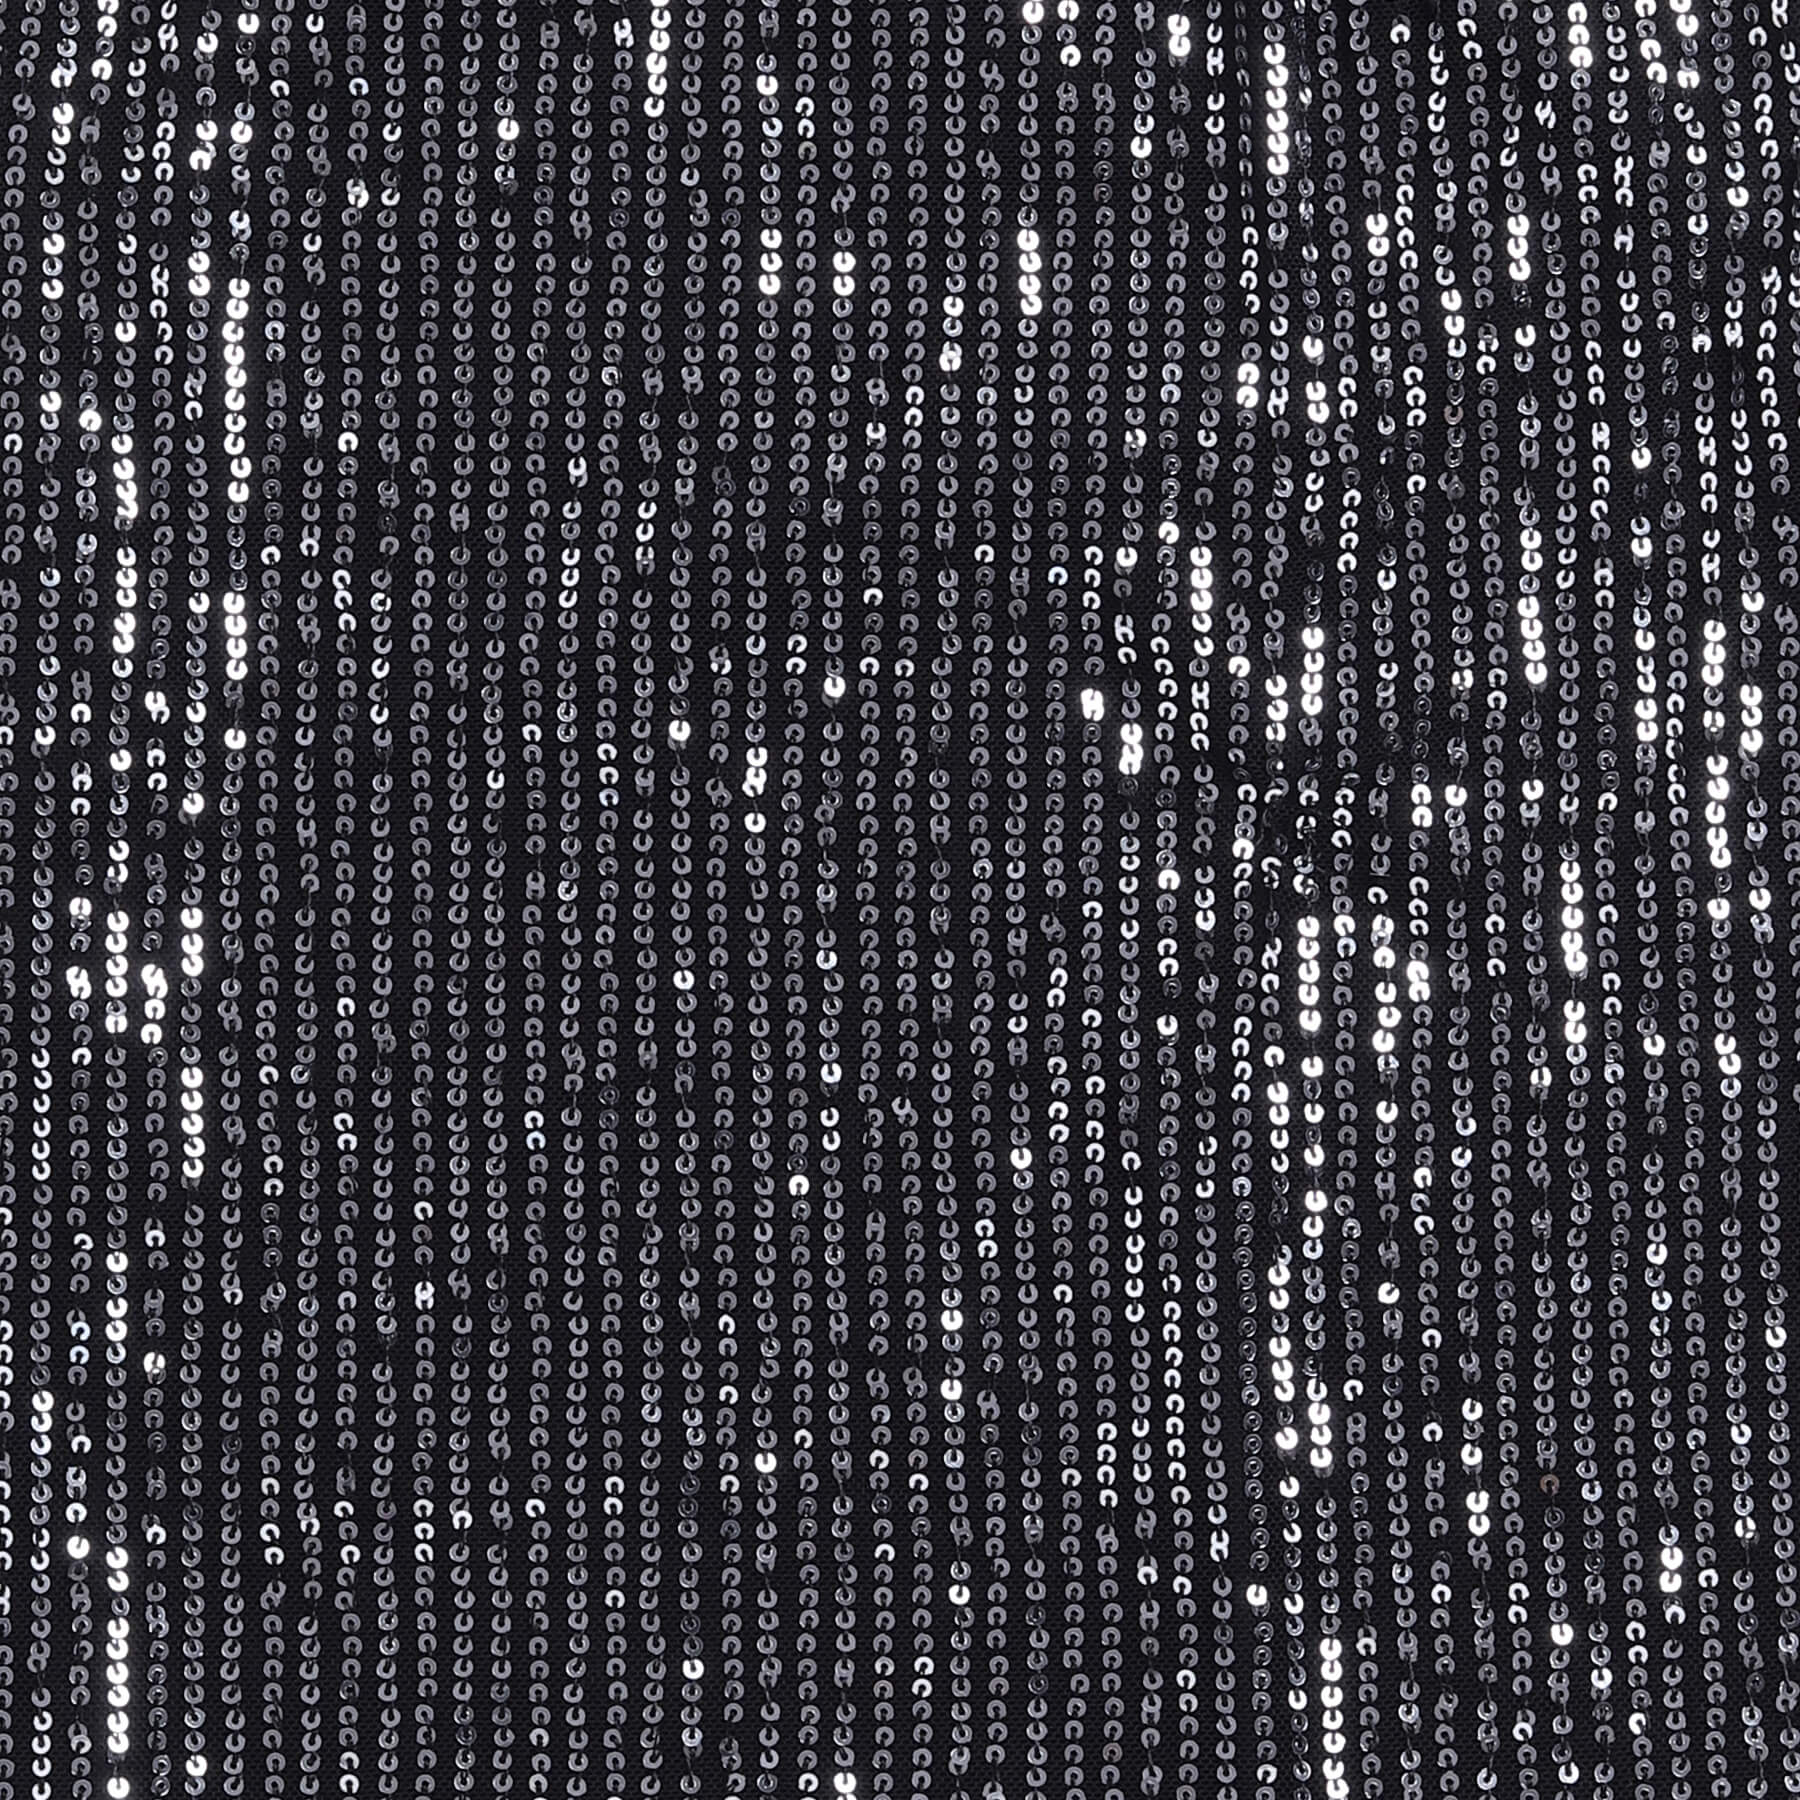 Shop One Shoulder Bow Detail Sequin A-Line Partywear Dress- Black Online